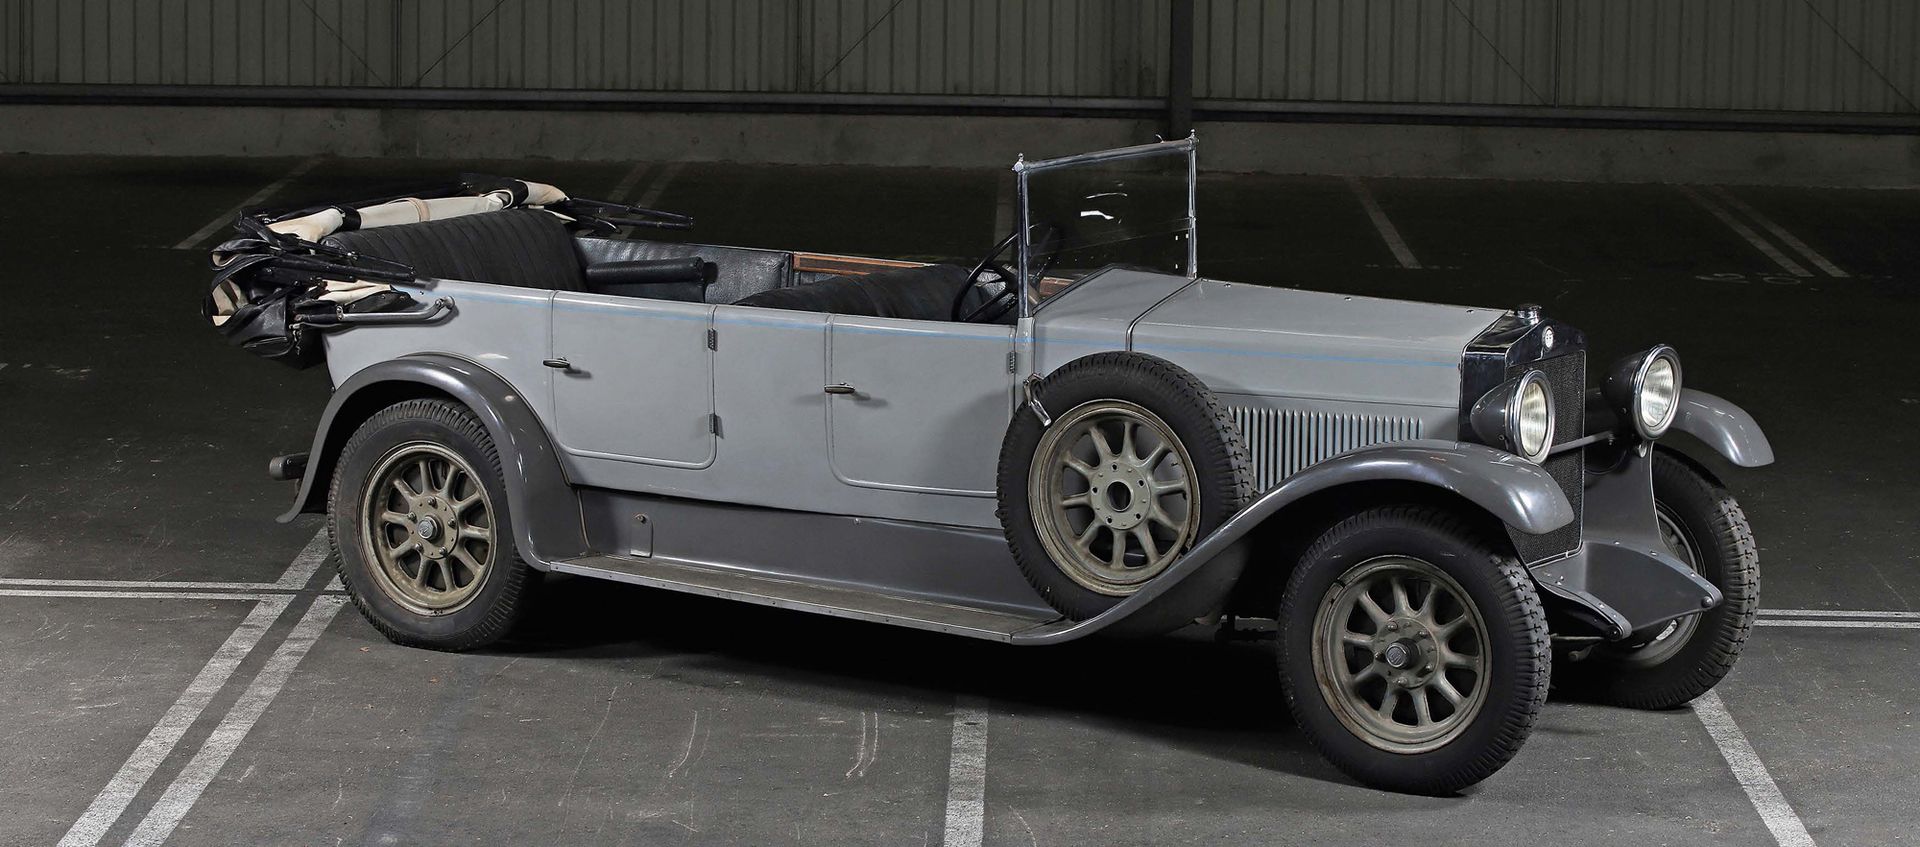 1927 FIAT 512 TORPÉDO 
Sans réserve

Attestation FFVE en cours



Belle patine

&hellip;